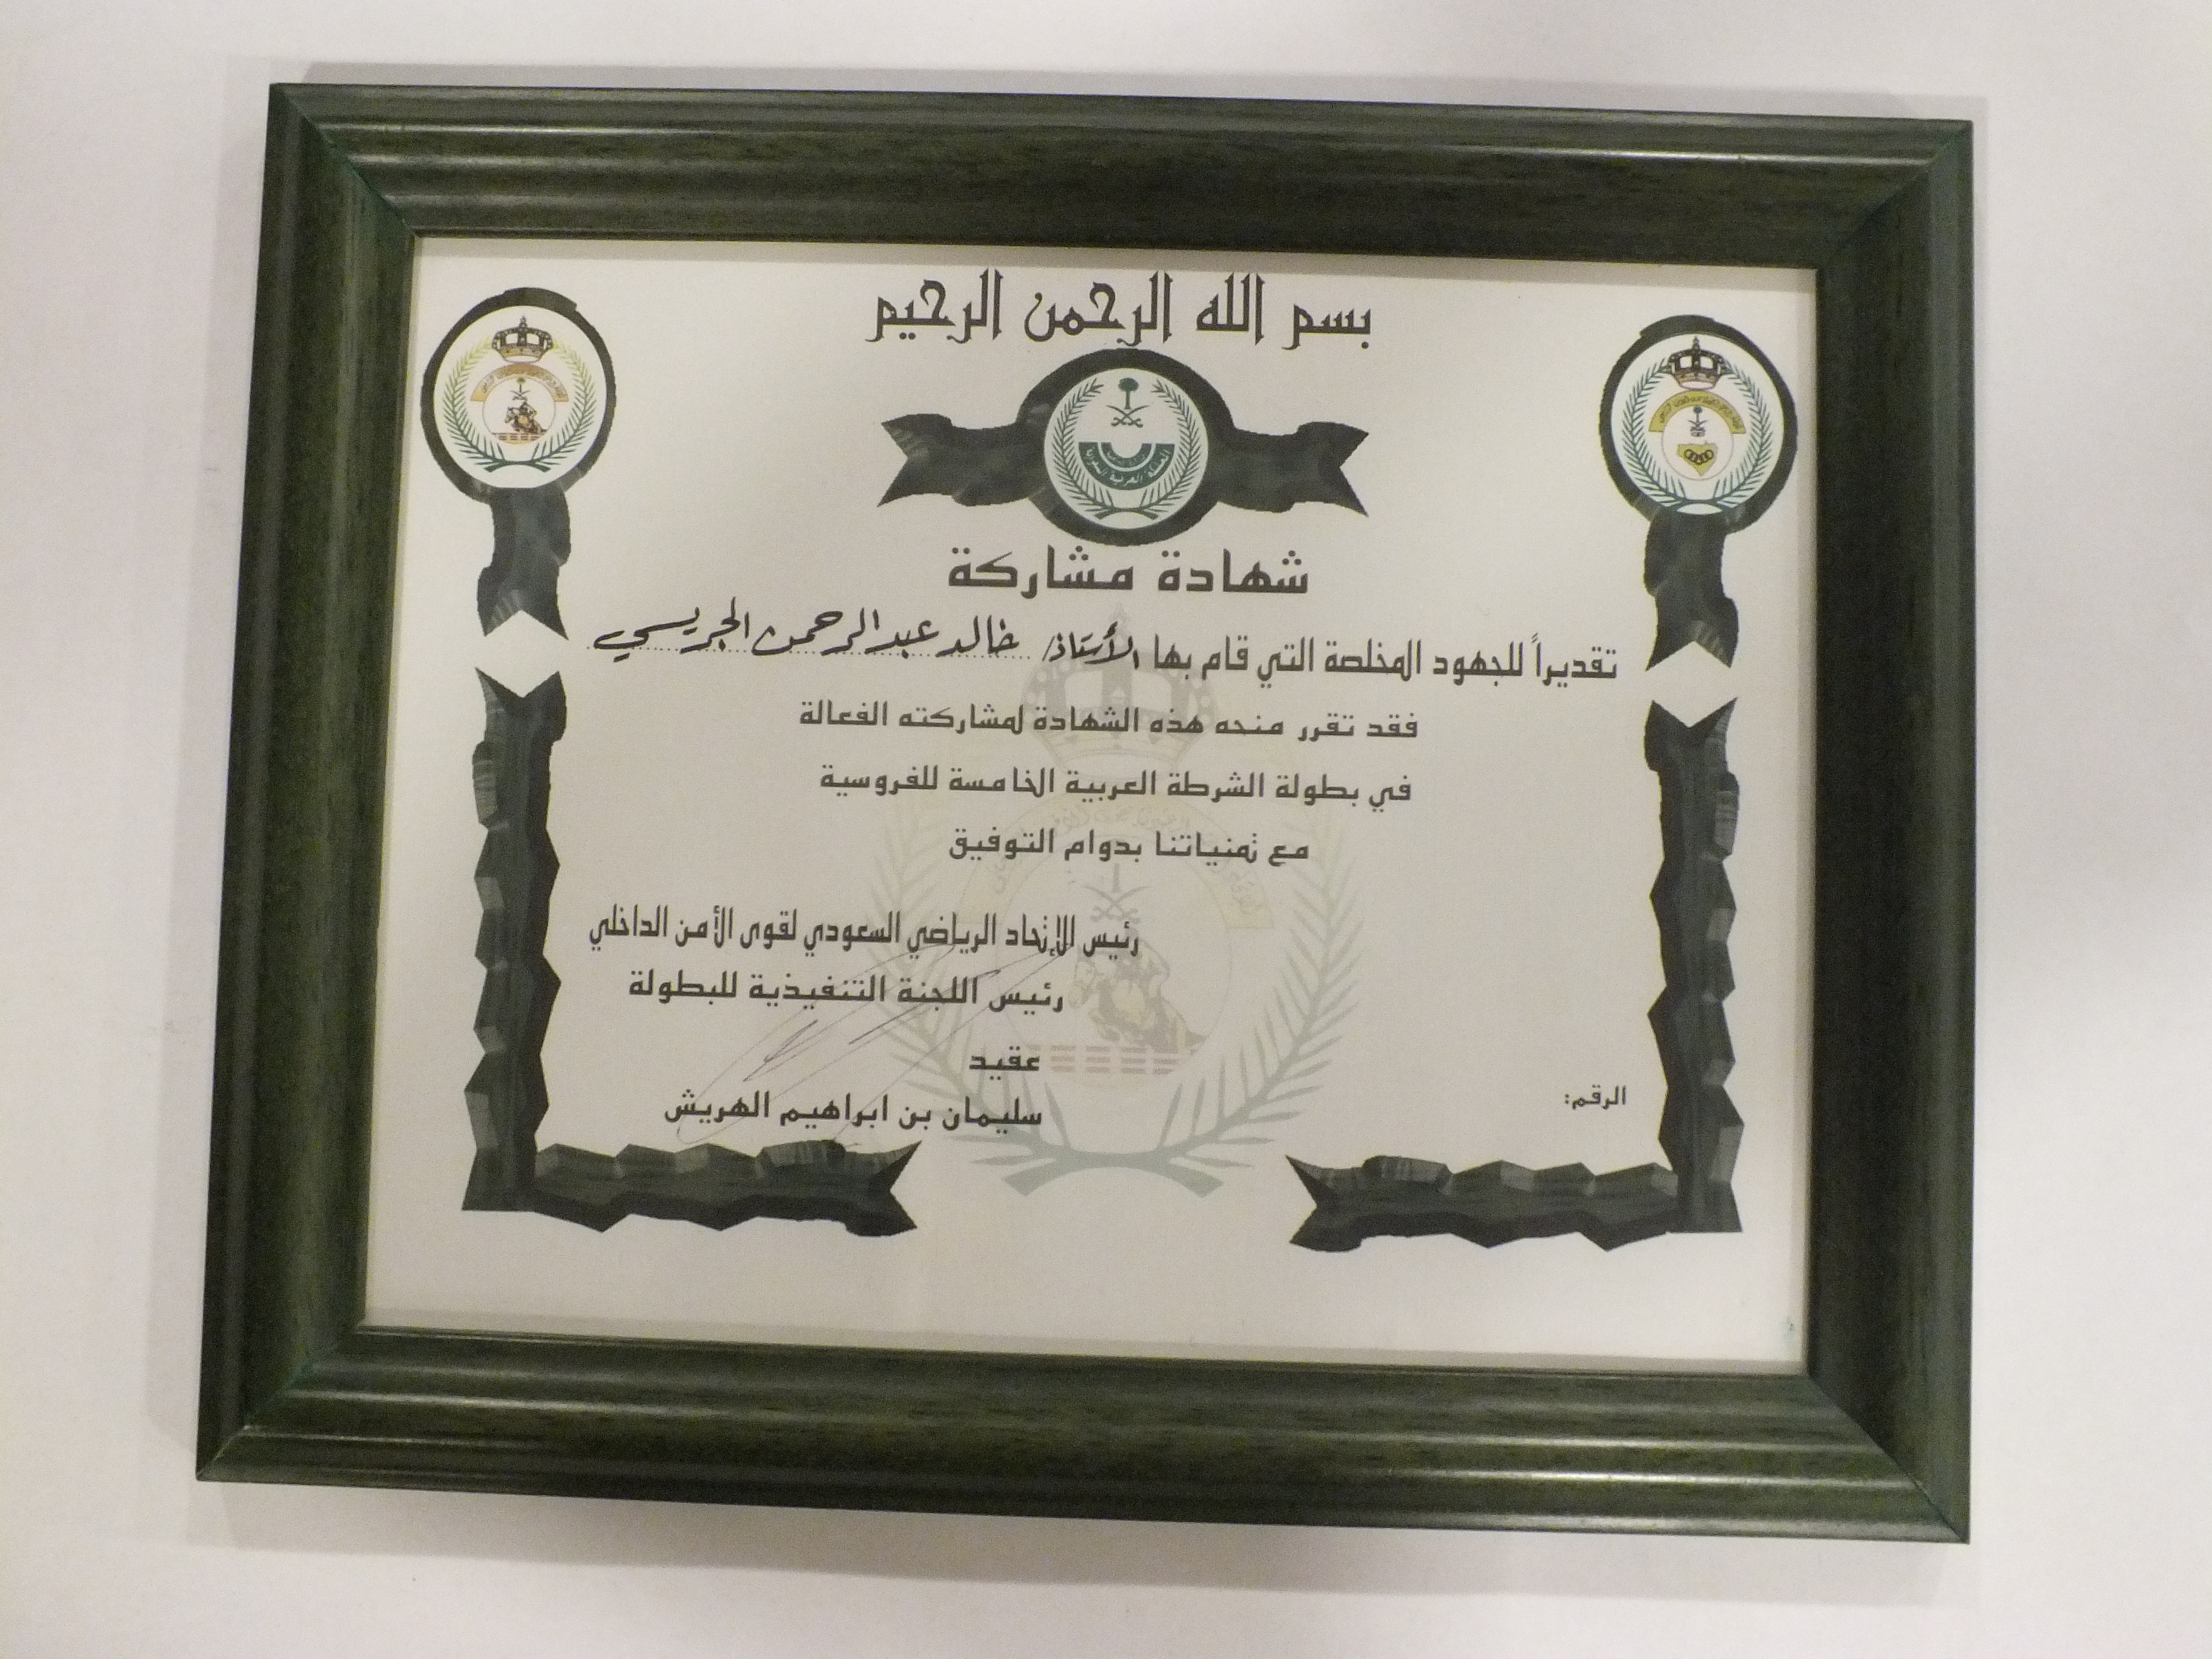 شهادة مشاركة من اللجنة العليا المنظمة لبطولة الشرطة العربية الخامسة